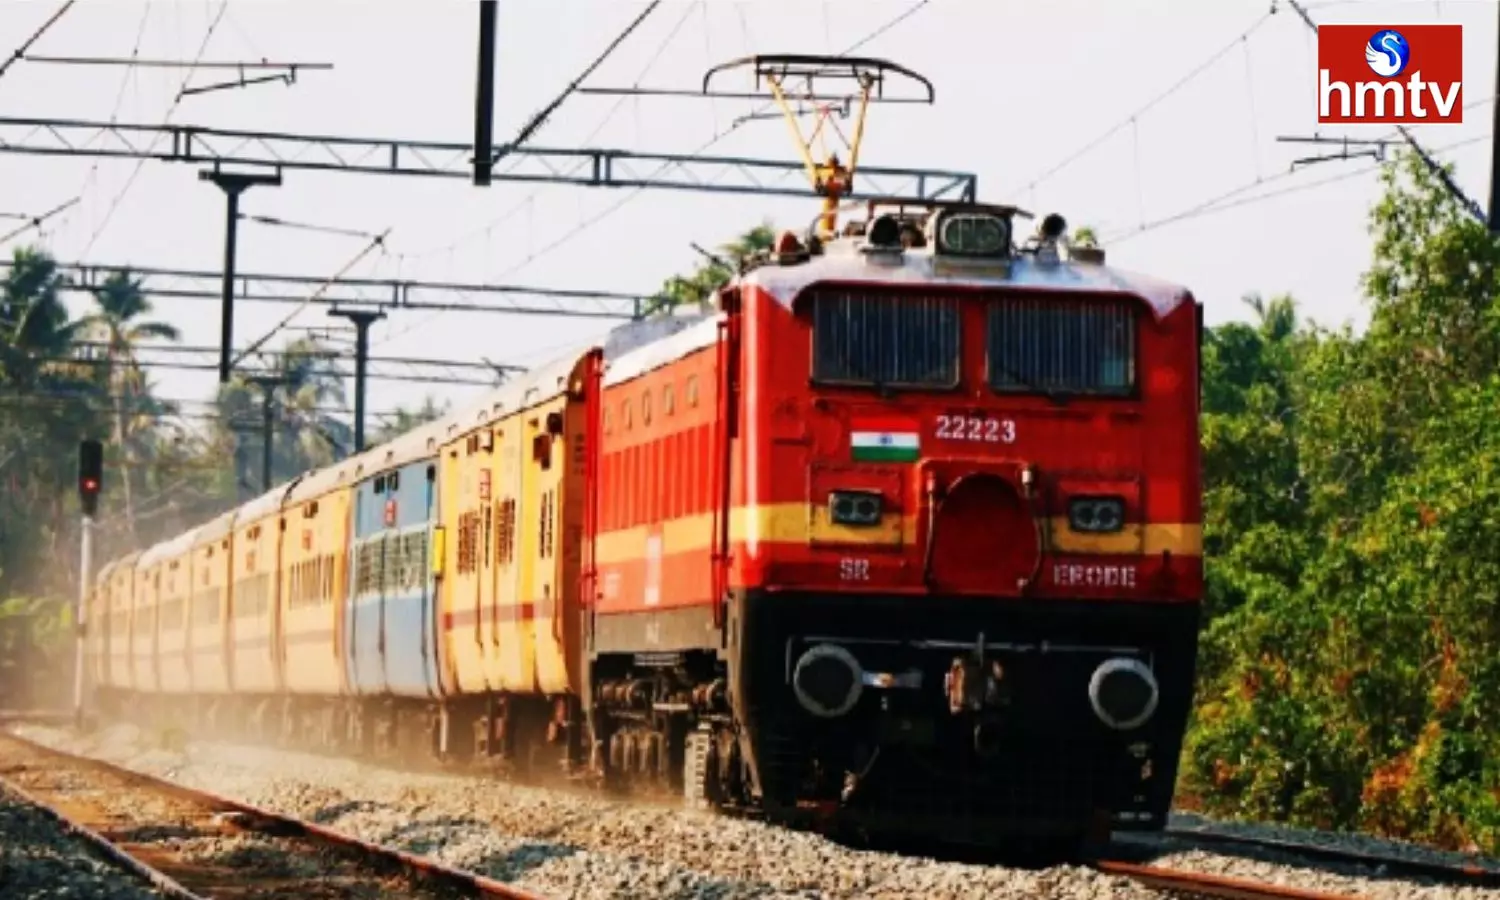 Indian Railways Train Ticket: రైల్వే టిక్కెట్లపై 75% తగ్గింపు.. ఎవరికో తెలుసా?